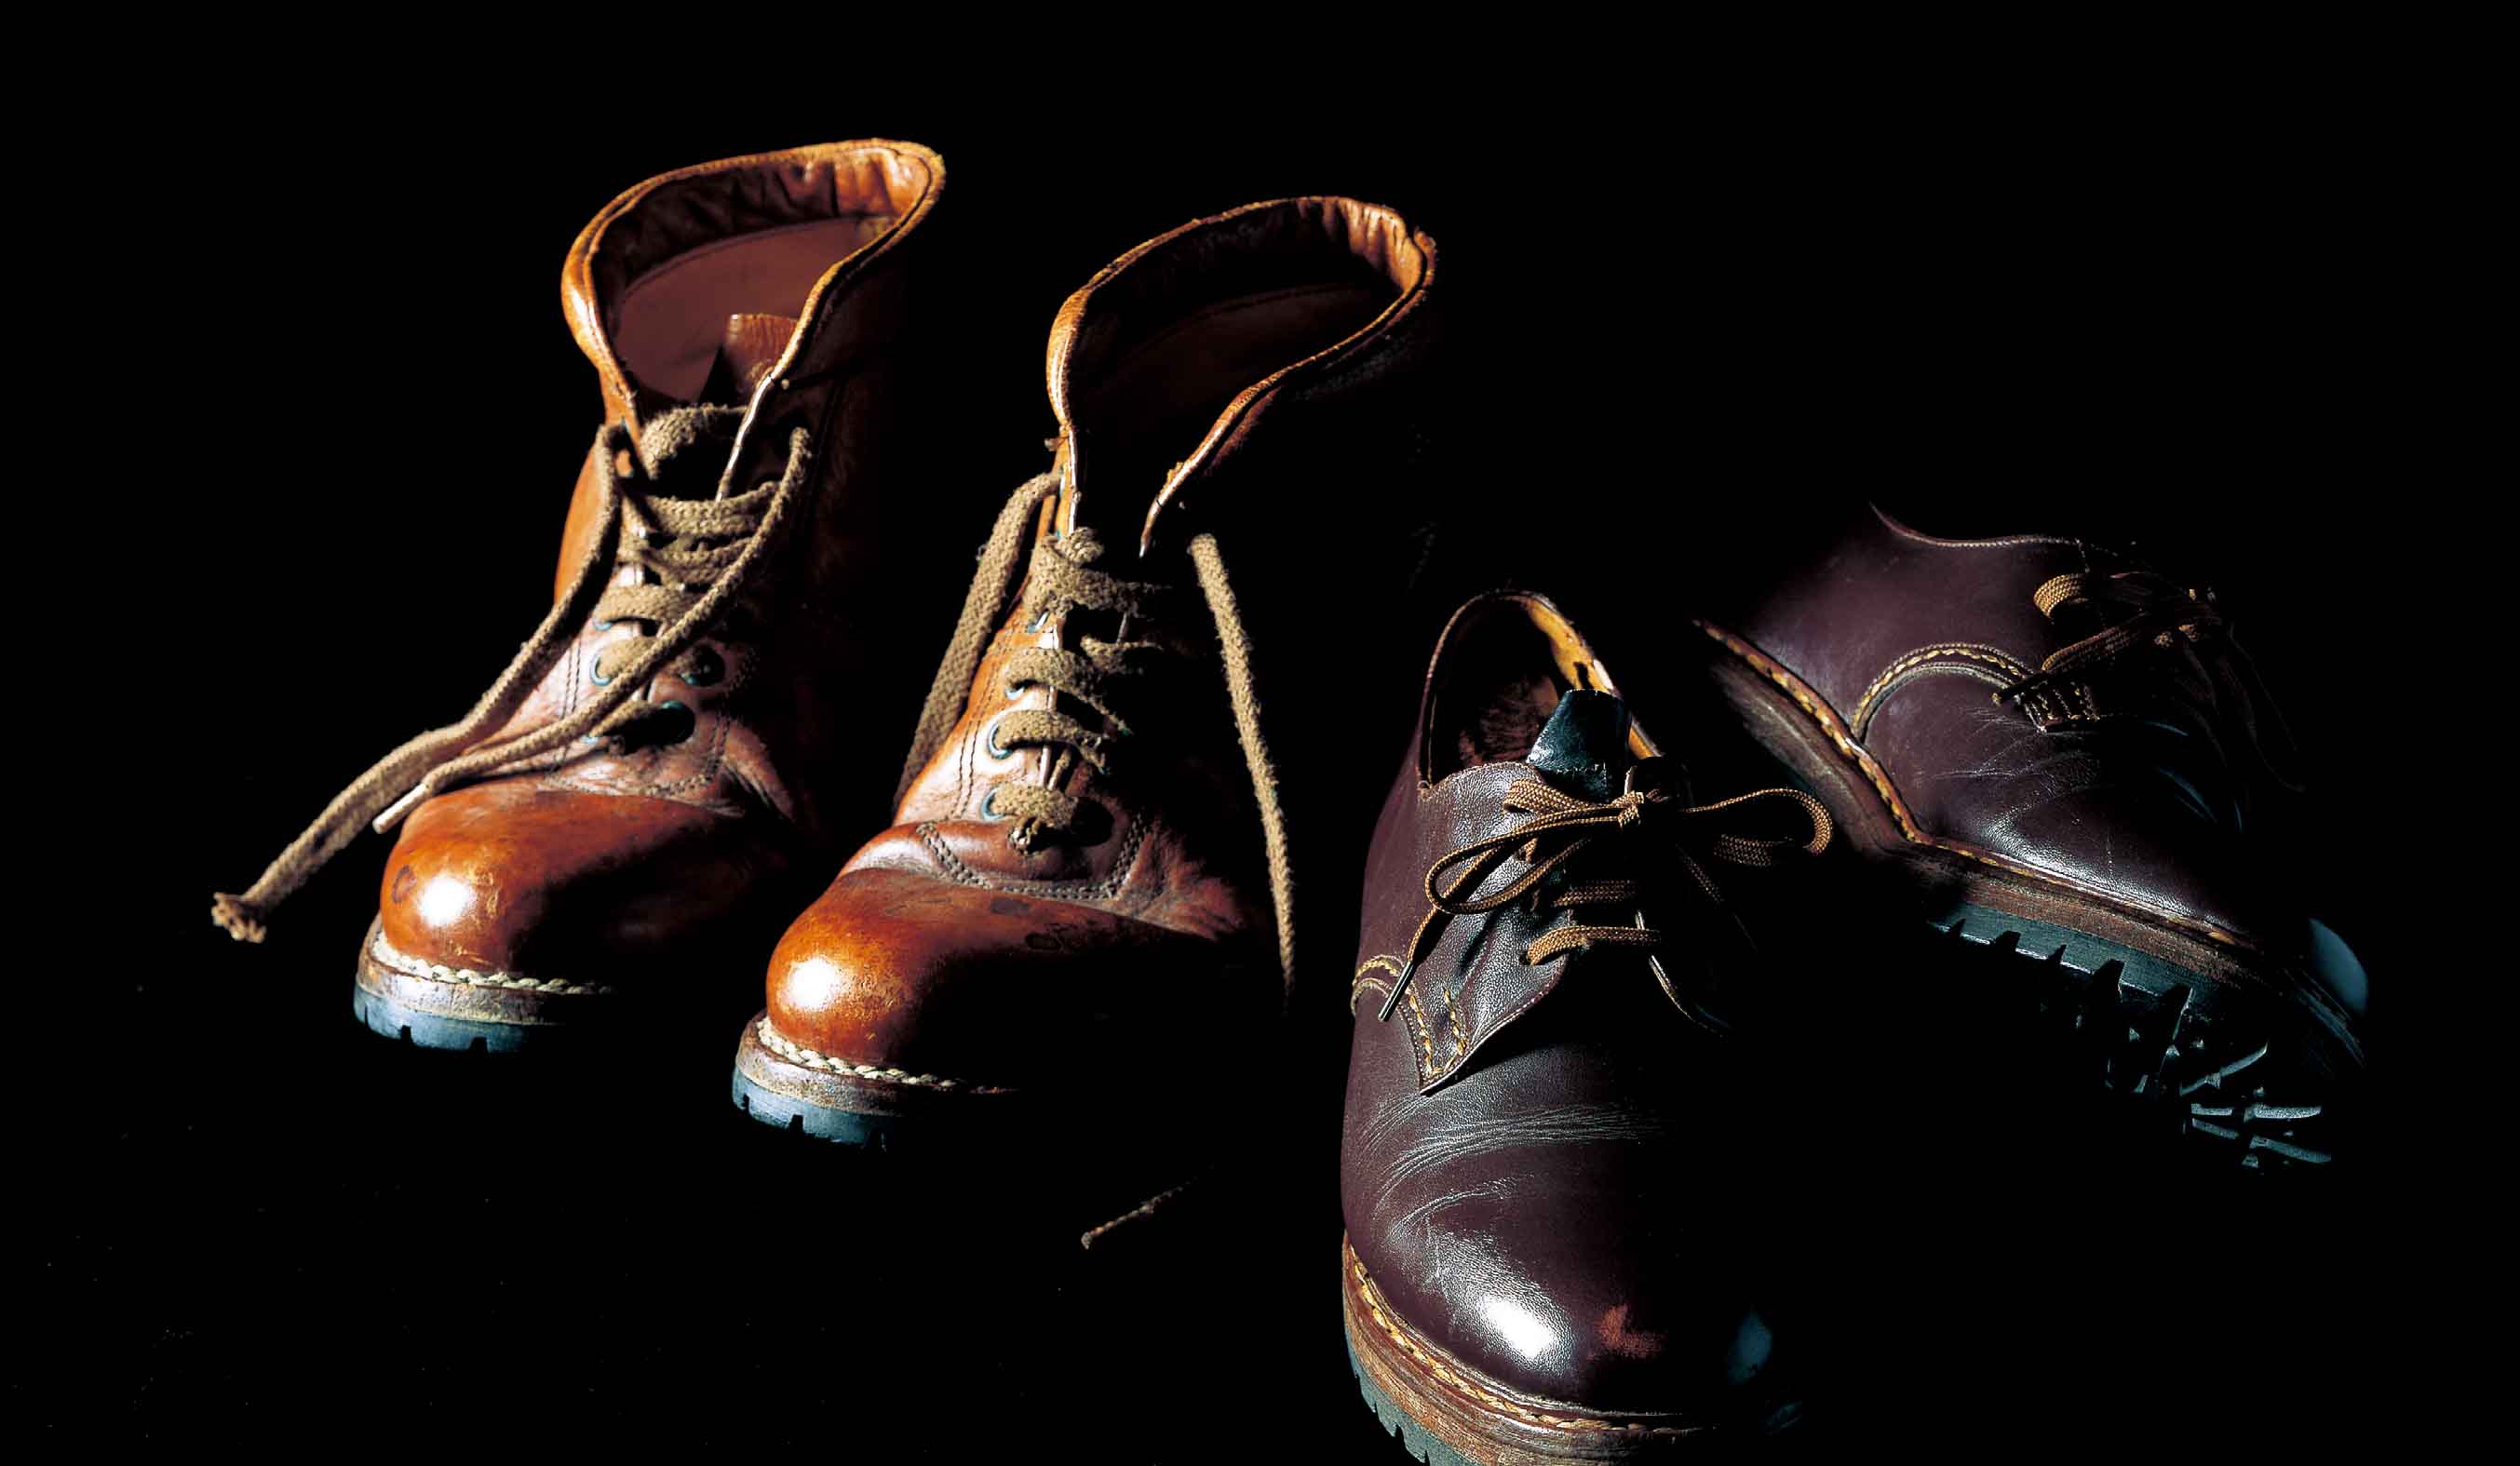 「ロバート・ロウリー」と「アルファンゴ」の靴